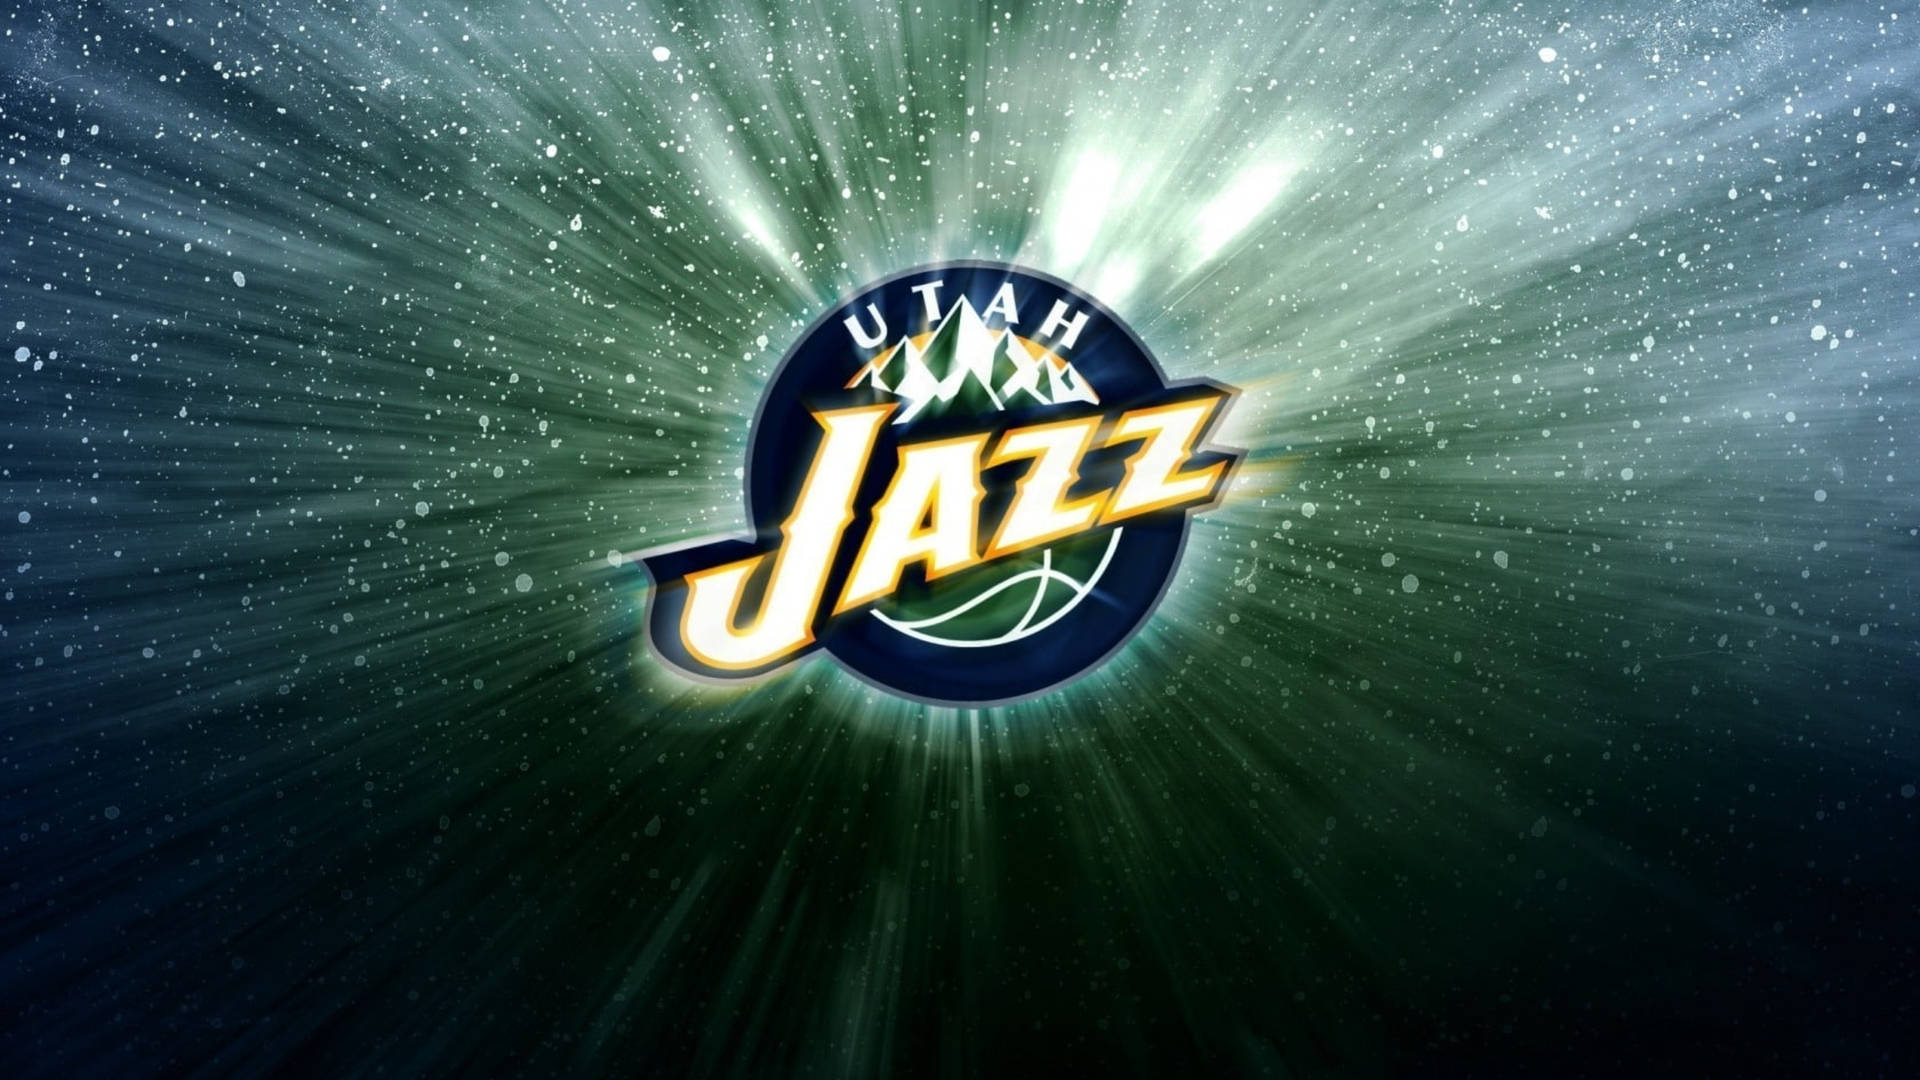 Utah Jazz Logo With Snow Wallpaper